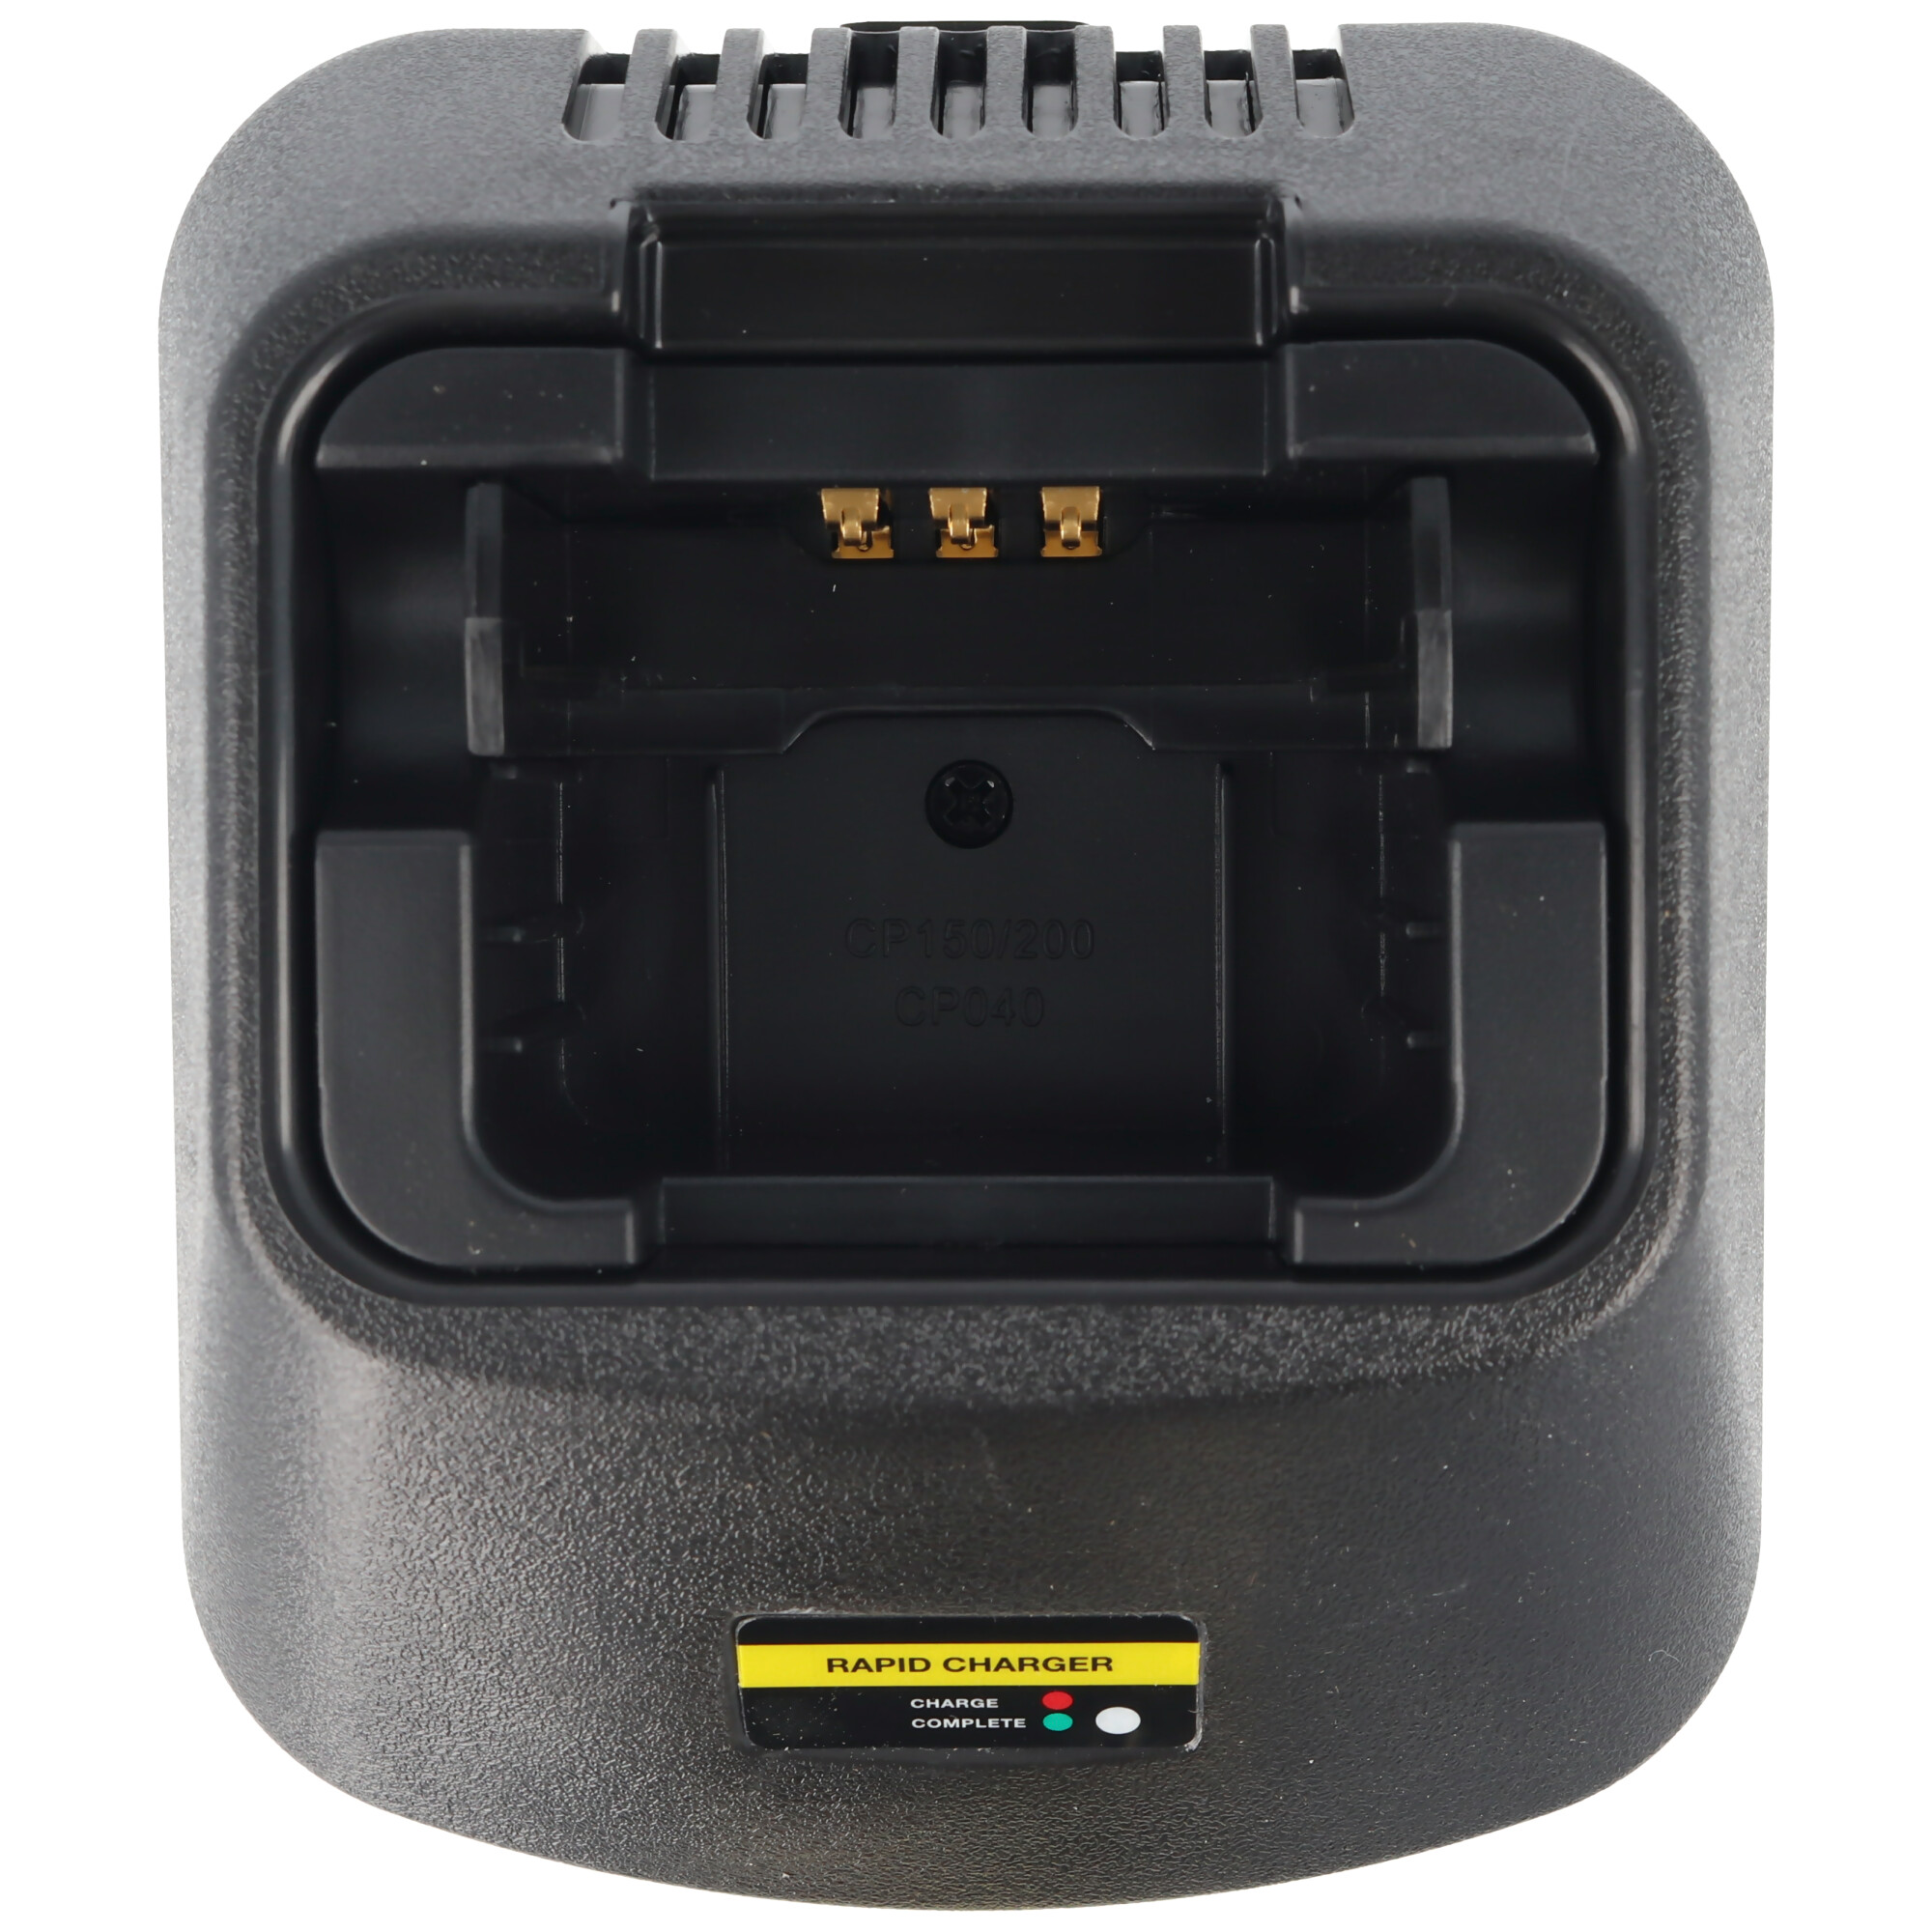 Schnell-Ladegerät passend für den Motorola Akku CP040, 080, 140, 150, 160, 180, 200, EP450, GP3188, 3688, PR400